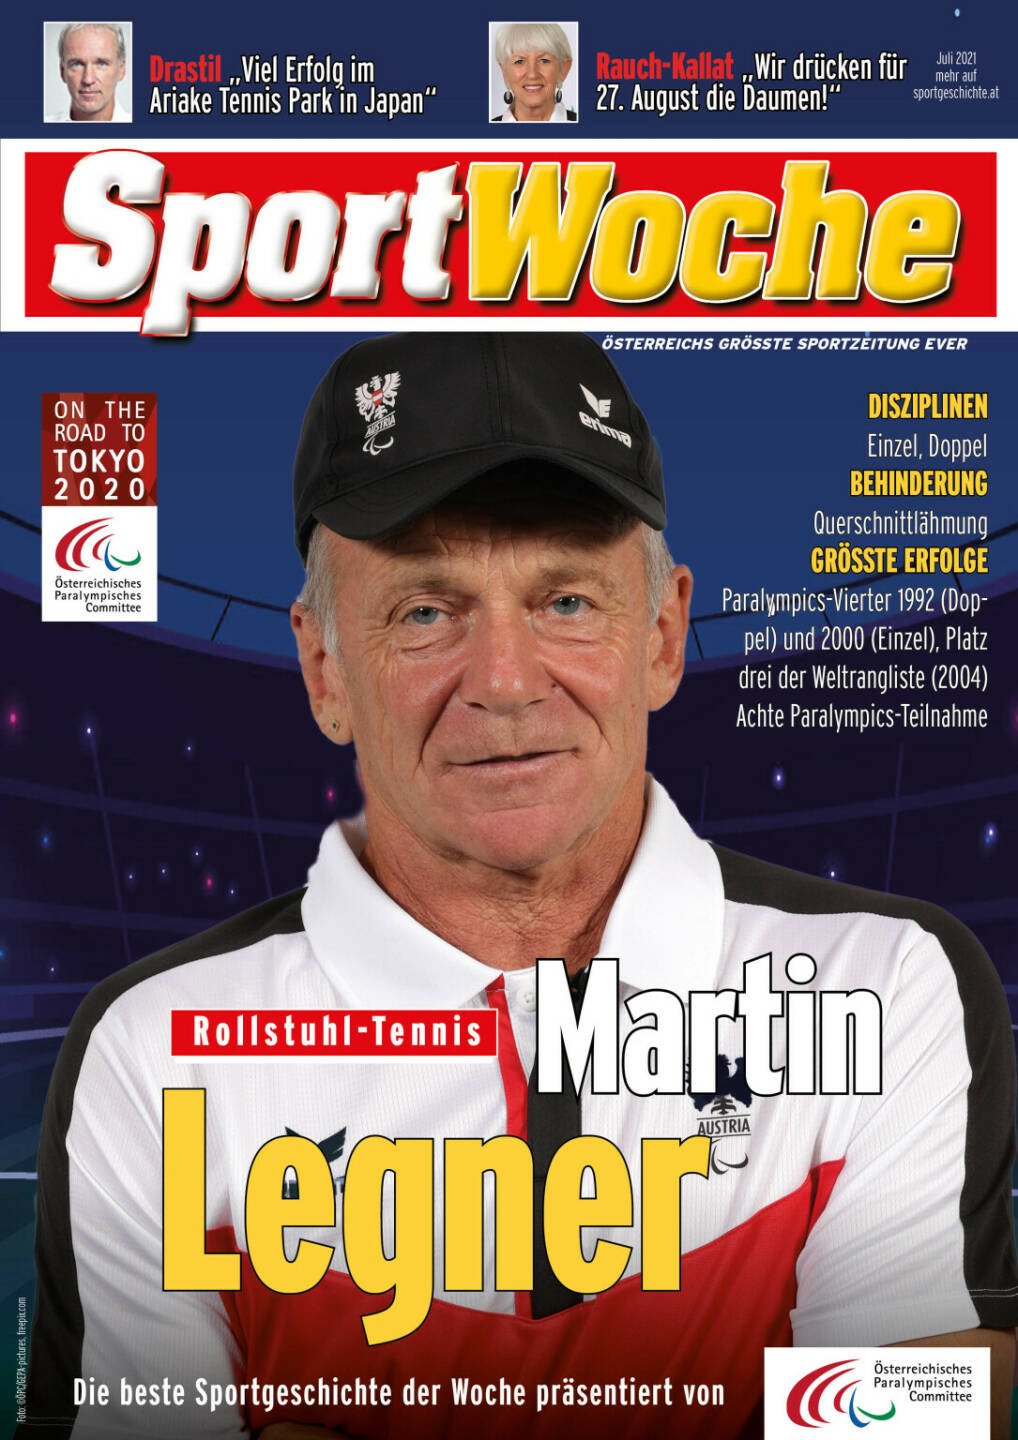 Martin Legner - Disziplinen Einzel, Doppel, Behinderung Querschnittlähmung, Größte Erfolge Paralympics-Vierter 1992 (Doppel) und 2000 (Einzel), Platz drei der Weltrangliste (2004), Achte Paralympics-Teilnahme